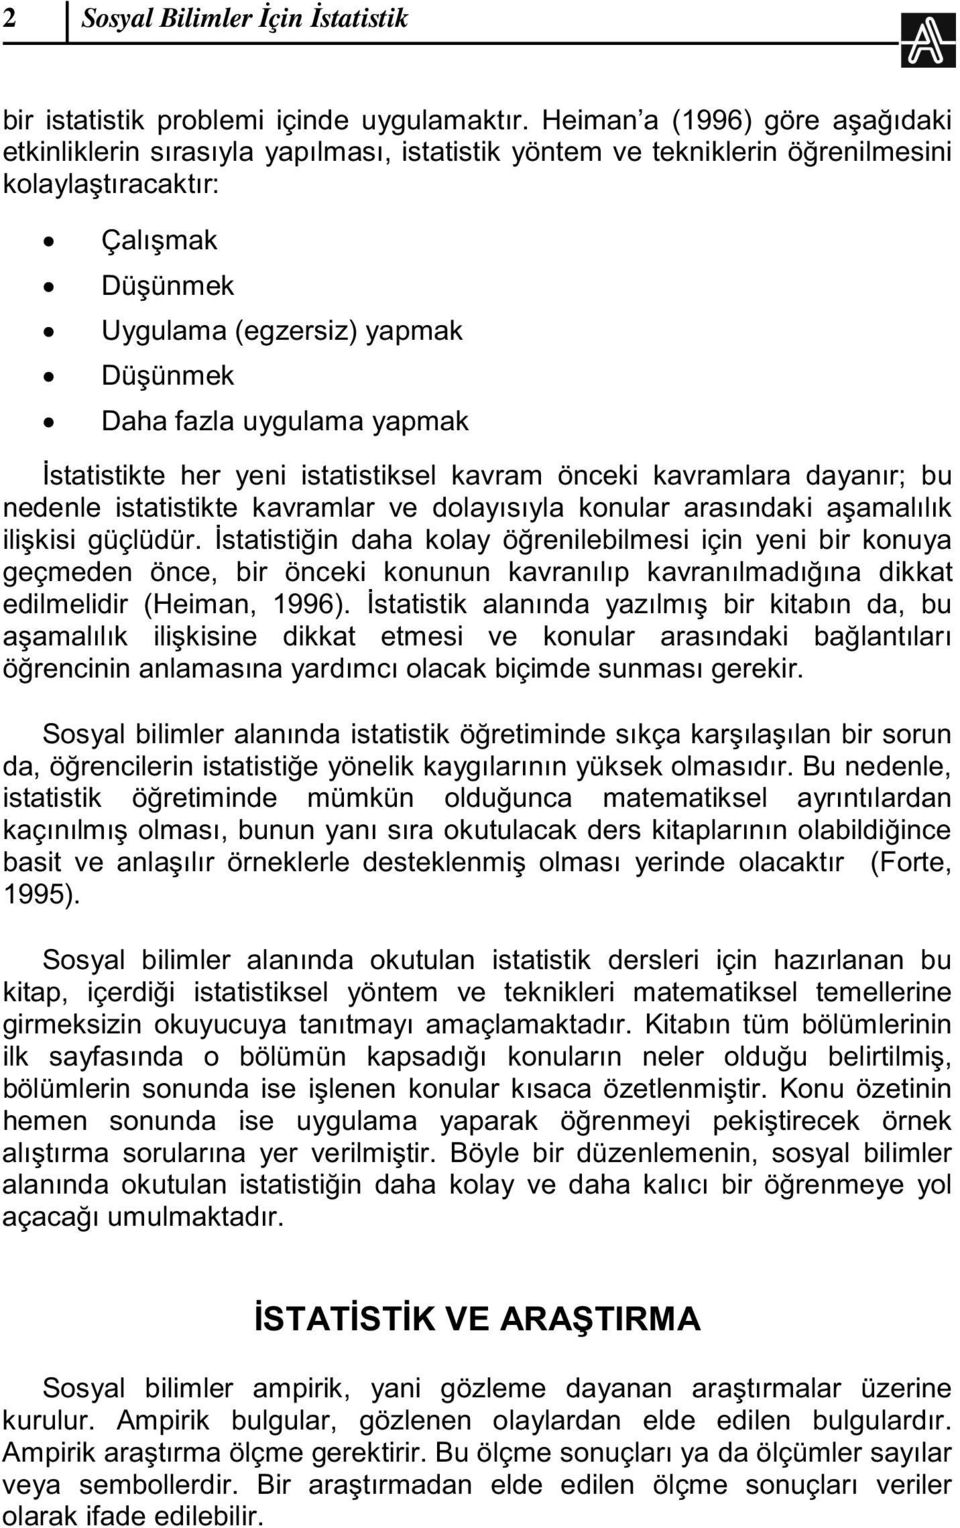 kavramlar ve kkat ince 1995).